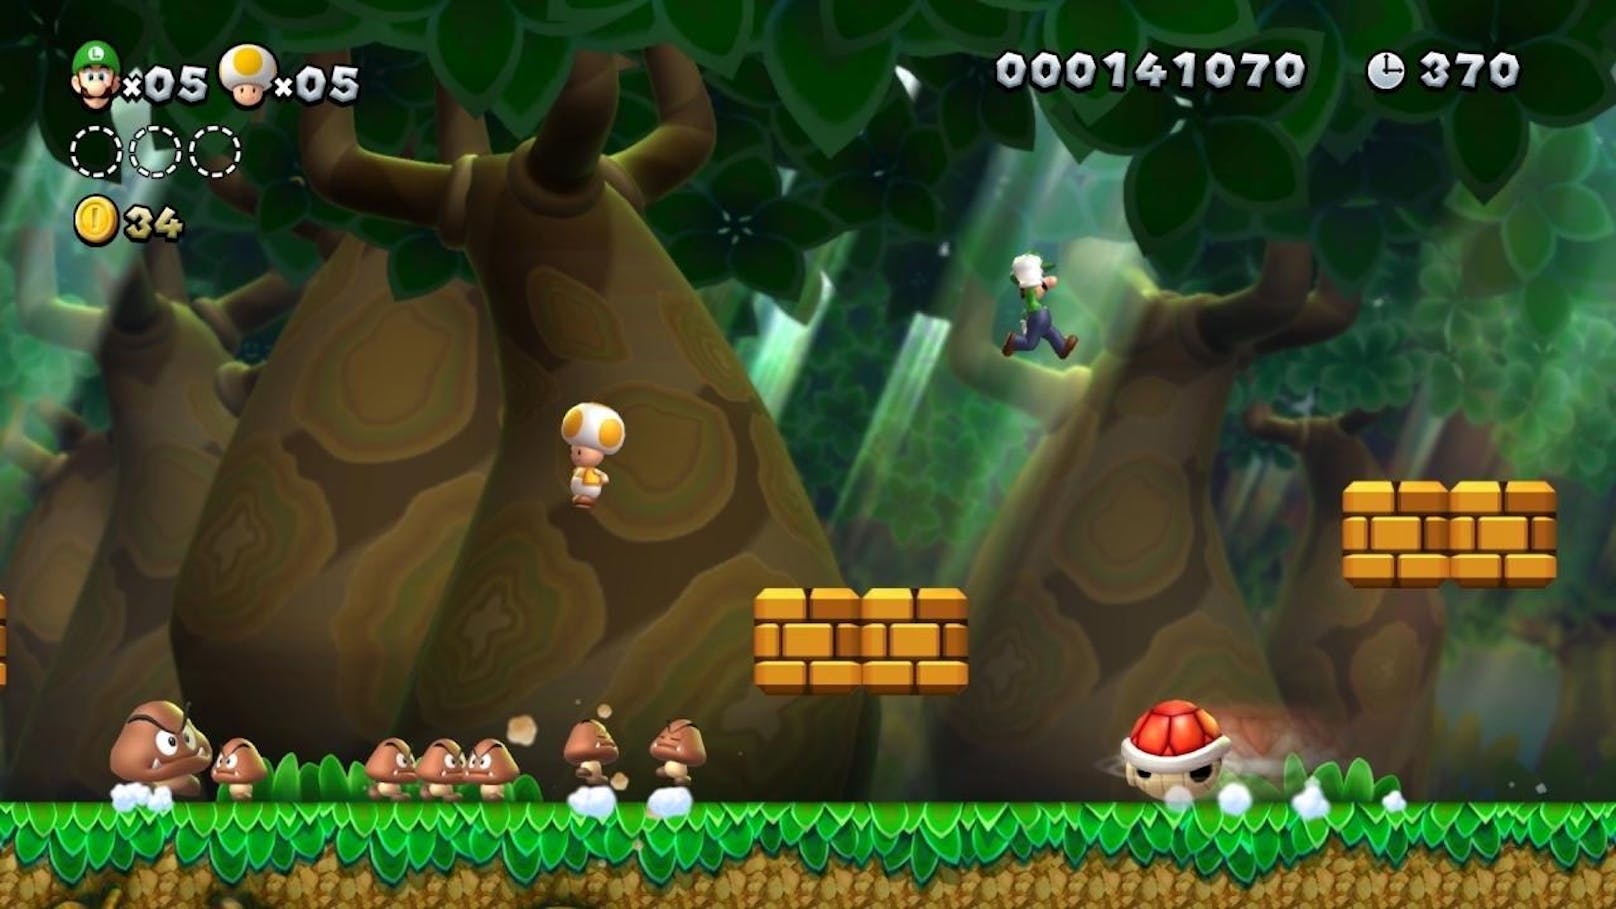 Die Story von New Super Mario Bros. U Deluxe zeigt sich in typischer Mario-Manier: Bowser, Bowser Jr. und die Koopalinge haben das Schloss von Prinzessin Peach eingenommen und Mario samt Freunden an den Rand des Pilz-Königreichs katapultiert.